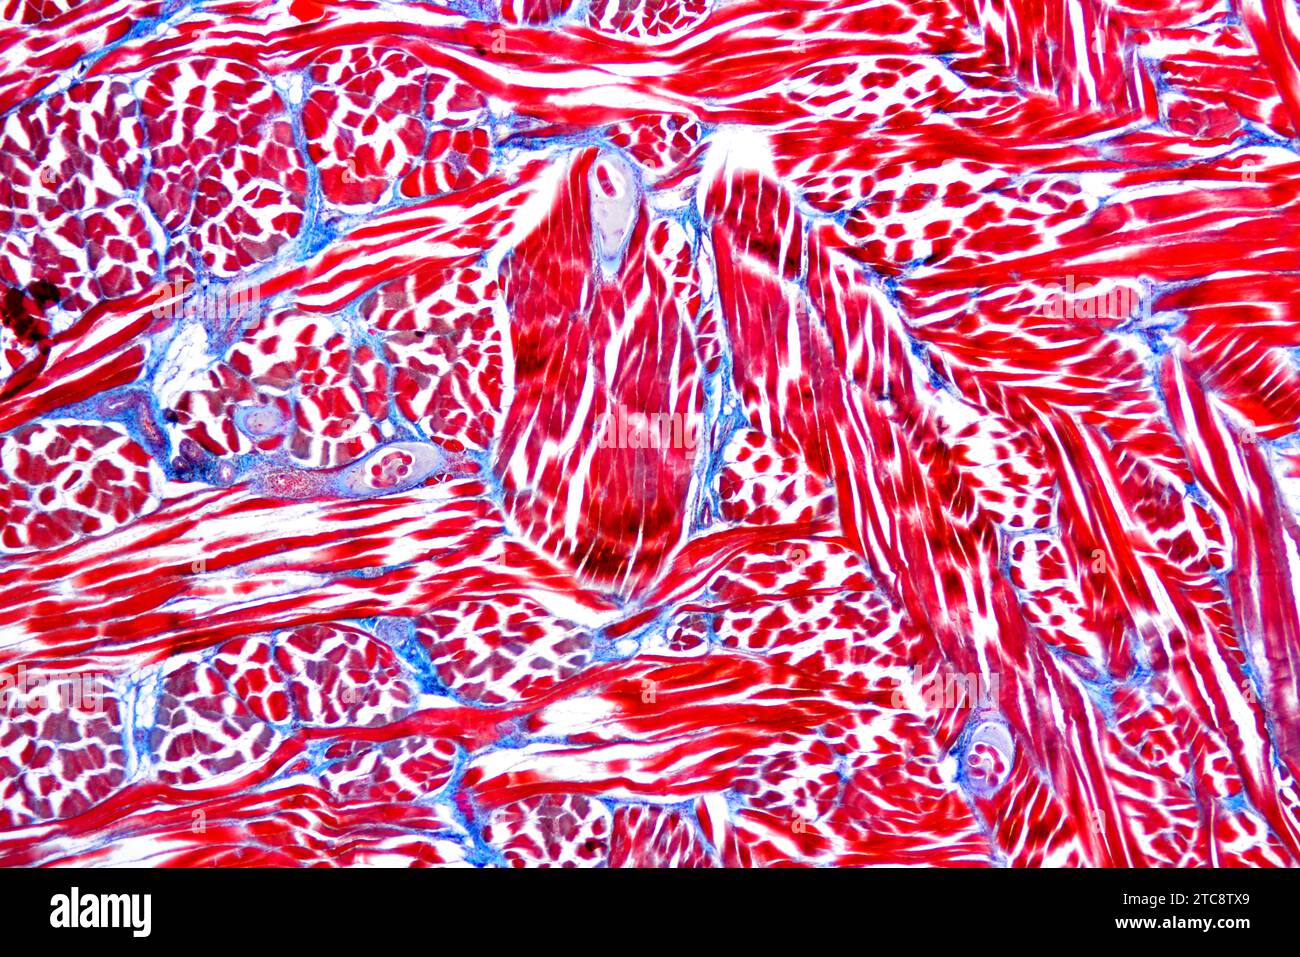 Larves de ver de porc (Trichinella spiralis) dans un tissu musculaire. Microscope optique X50 à 10 cm de large. Banque D'Images